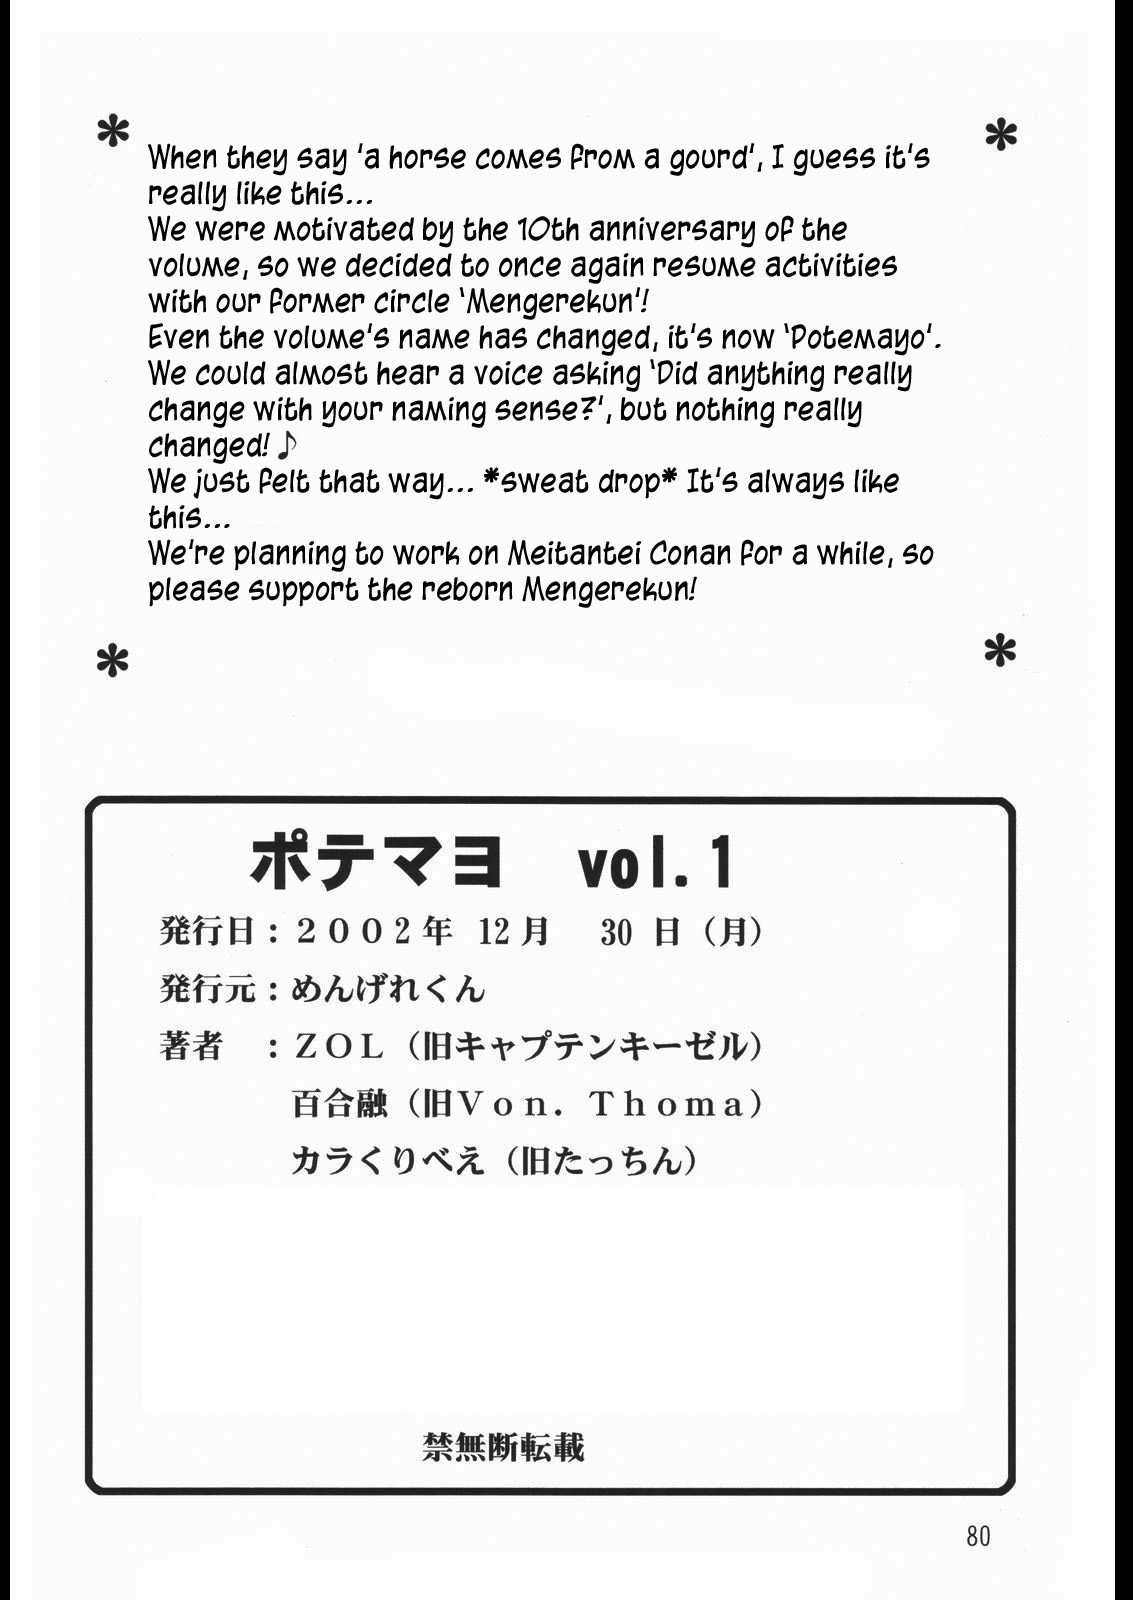 [Mengerekun (Karakuribee, Yuri Tohru, ZOL)] Potemayo vol. 1 (Meitantei Conan) (Spanish) (Kurotao) 